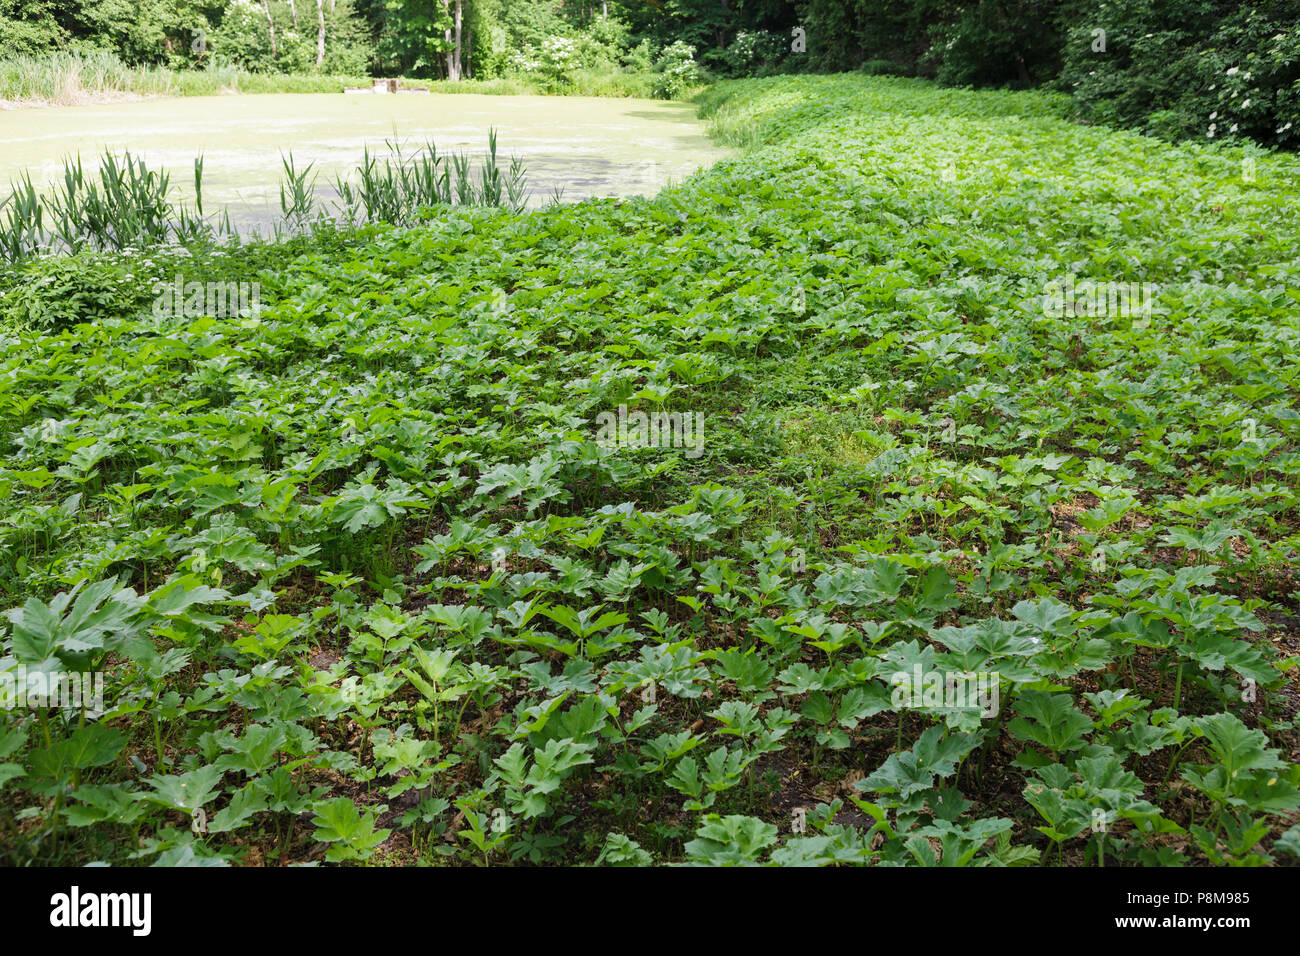 Campo di giovani gigante verde hoghweed. Questo pericoloso piante invasive può causare gravi ustioni alla pelle e persino la morte in casi estremi. Foto Stock